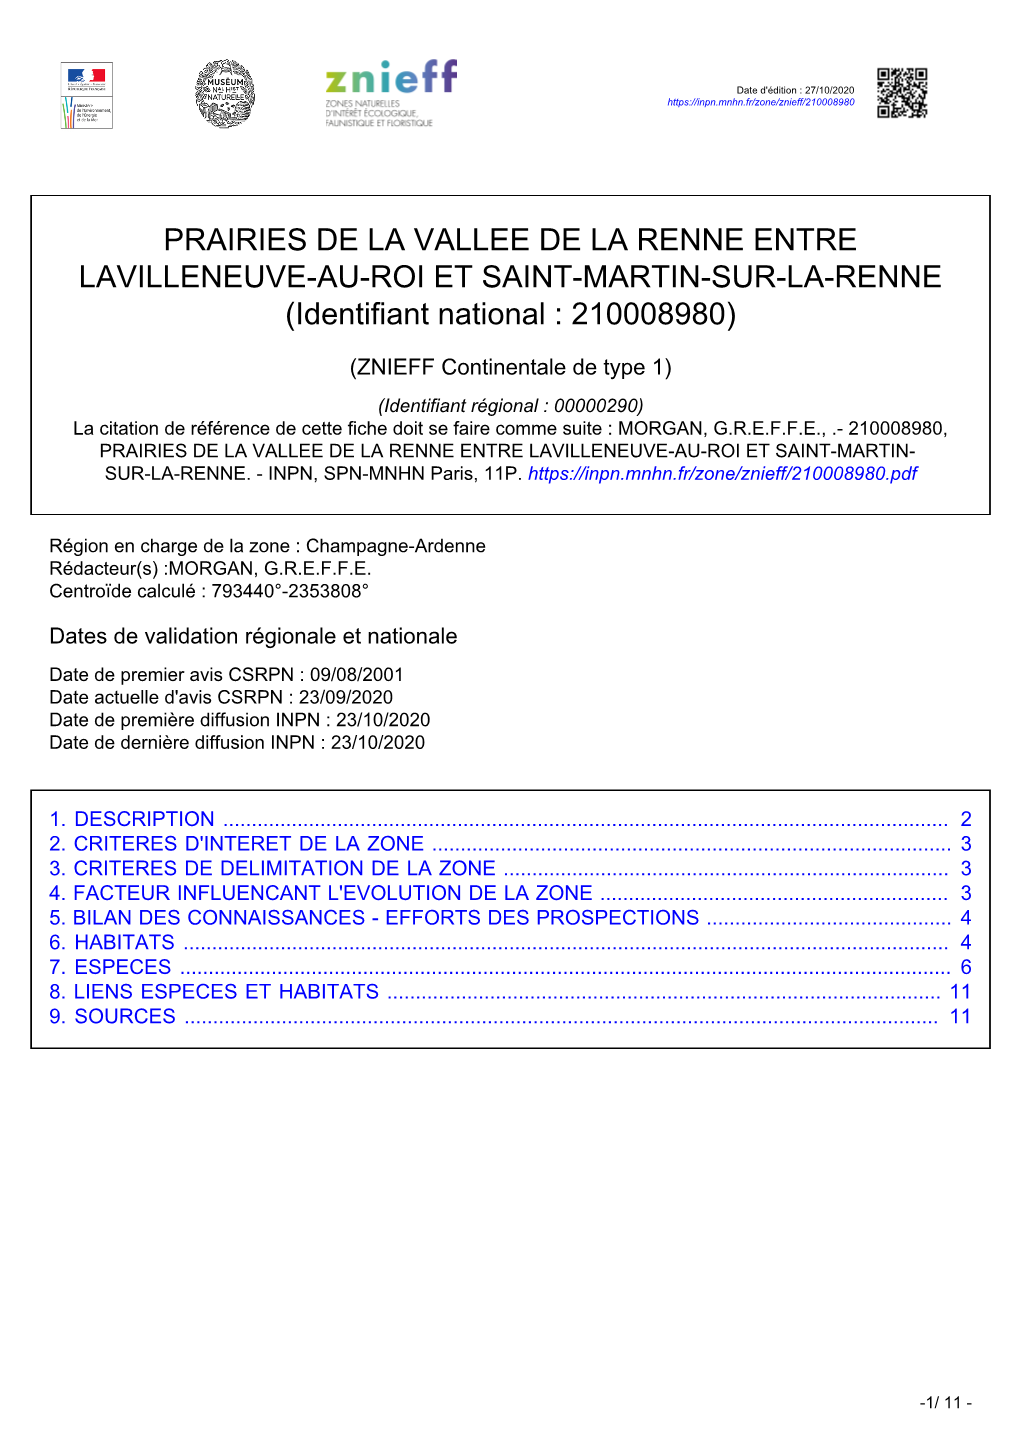 PRAIRIES DE LA VALLEE DE LA RENNE ENTRE LAVILLENEUVE-AU-ROI ET SAINT-MARTIN-SUR-LA-RENNE (Identifiant National : 210008980)